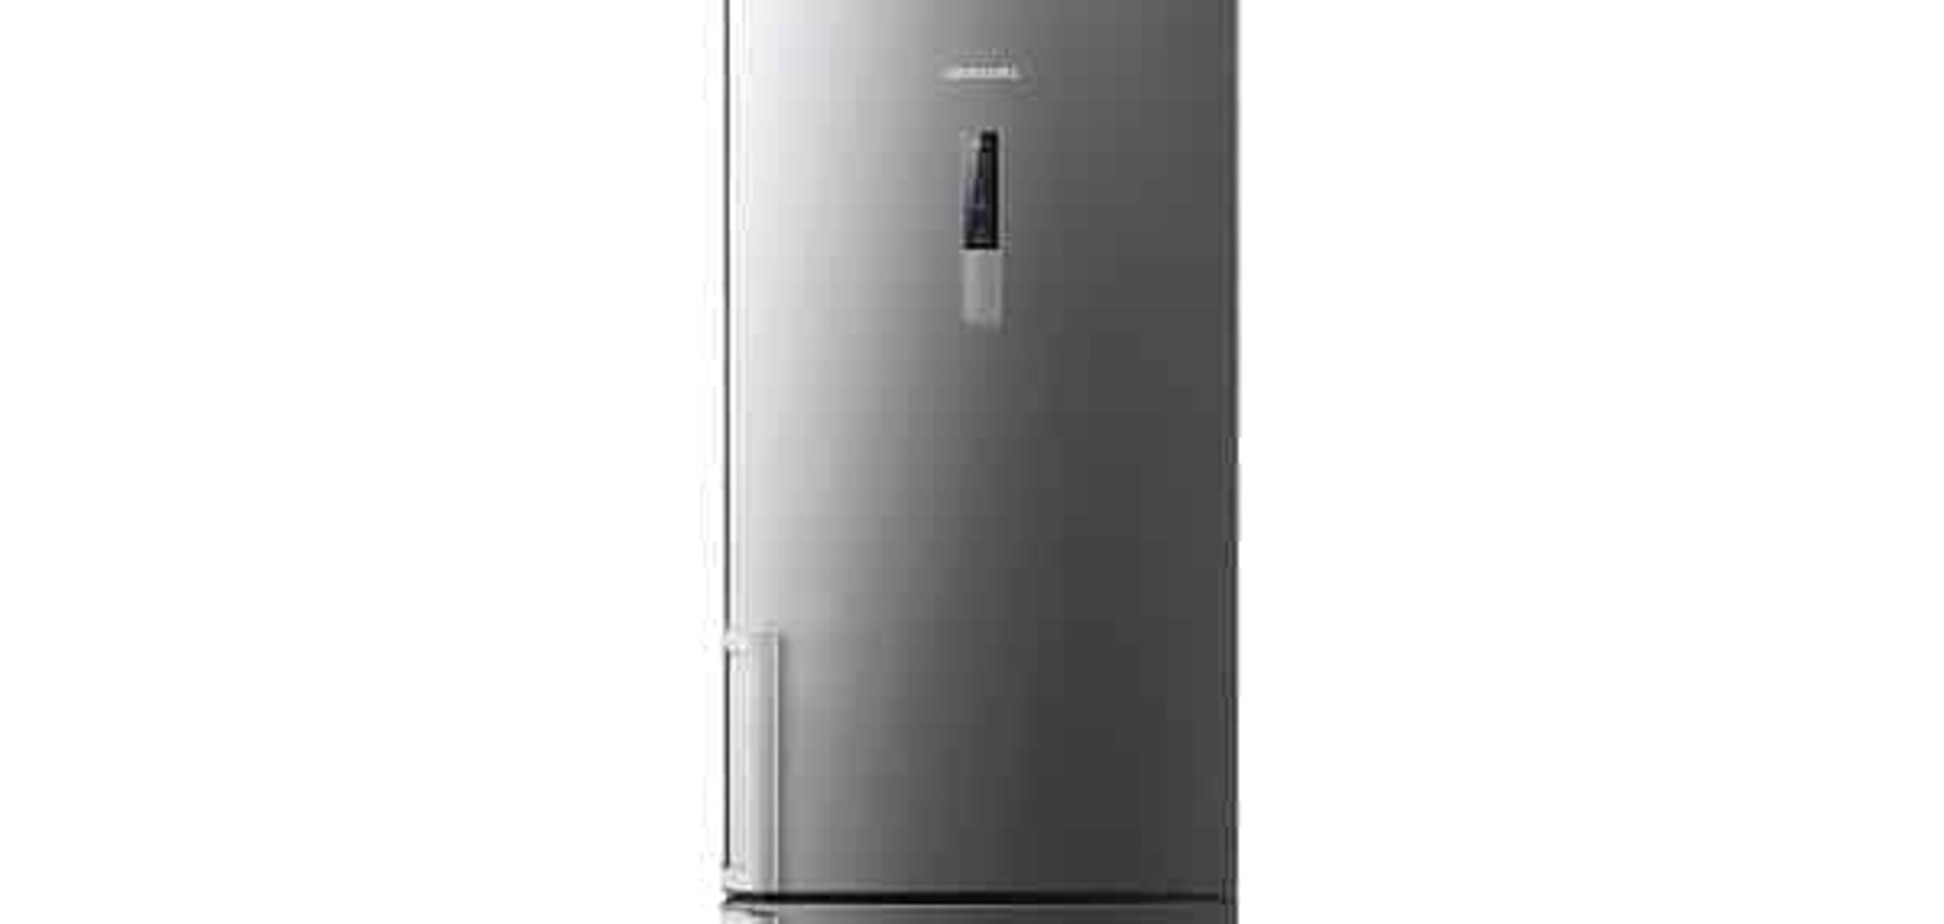 Обзор холодильника Samsung RL56GREIH